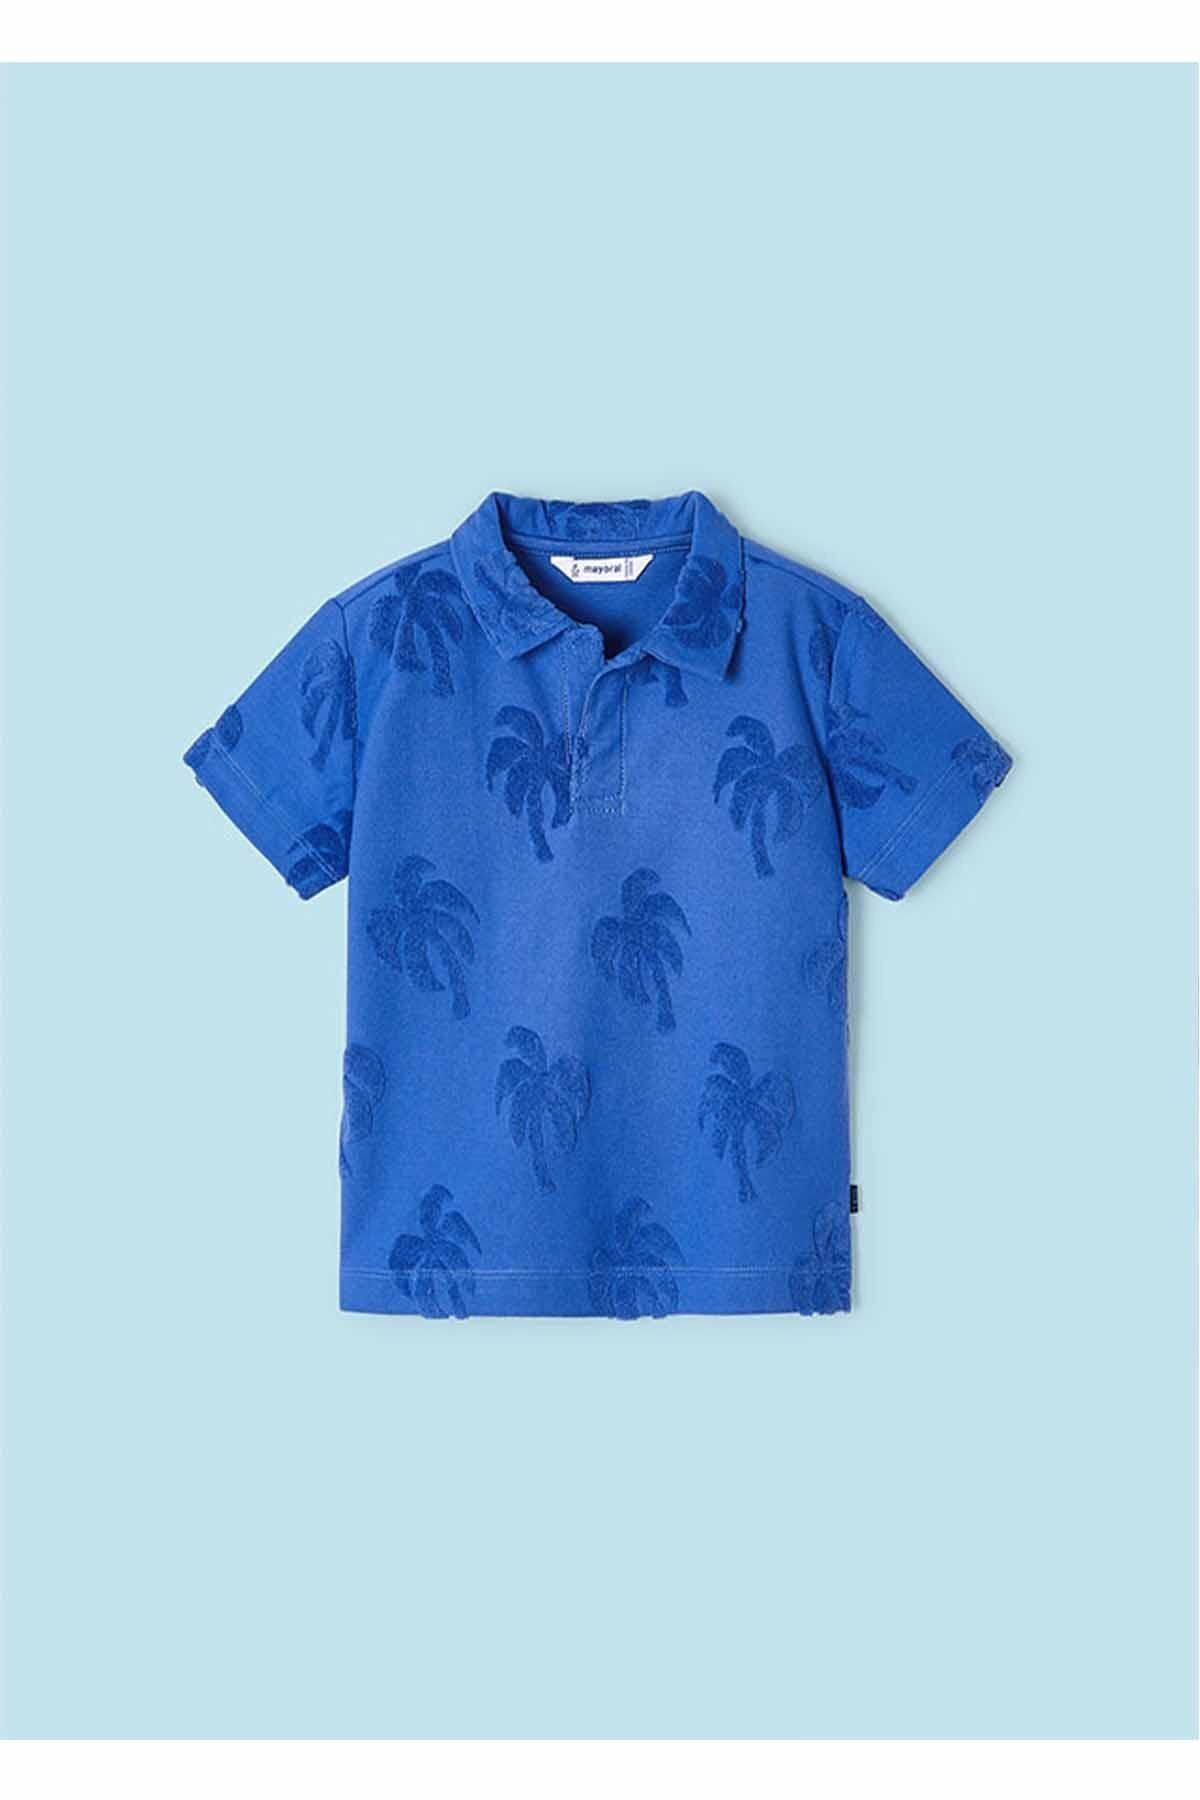 Mayoral Yazlık Erkek Polo Kısa Kol T-shirt Mavi